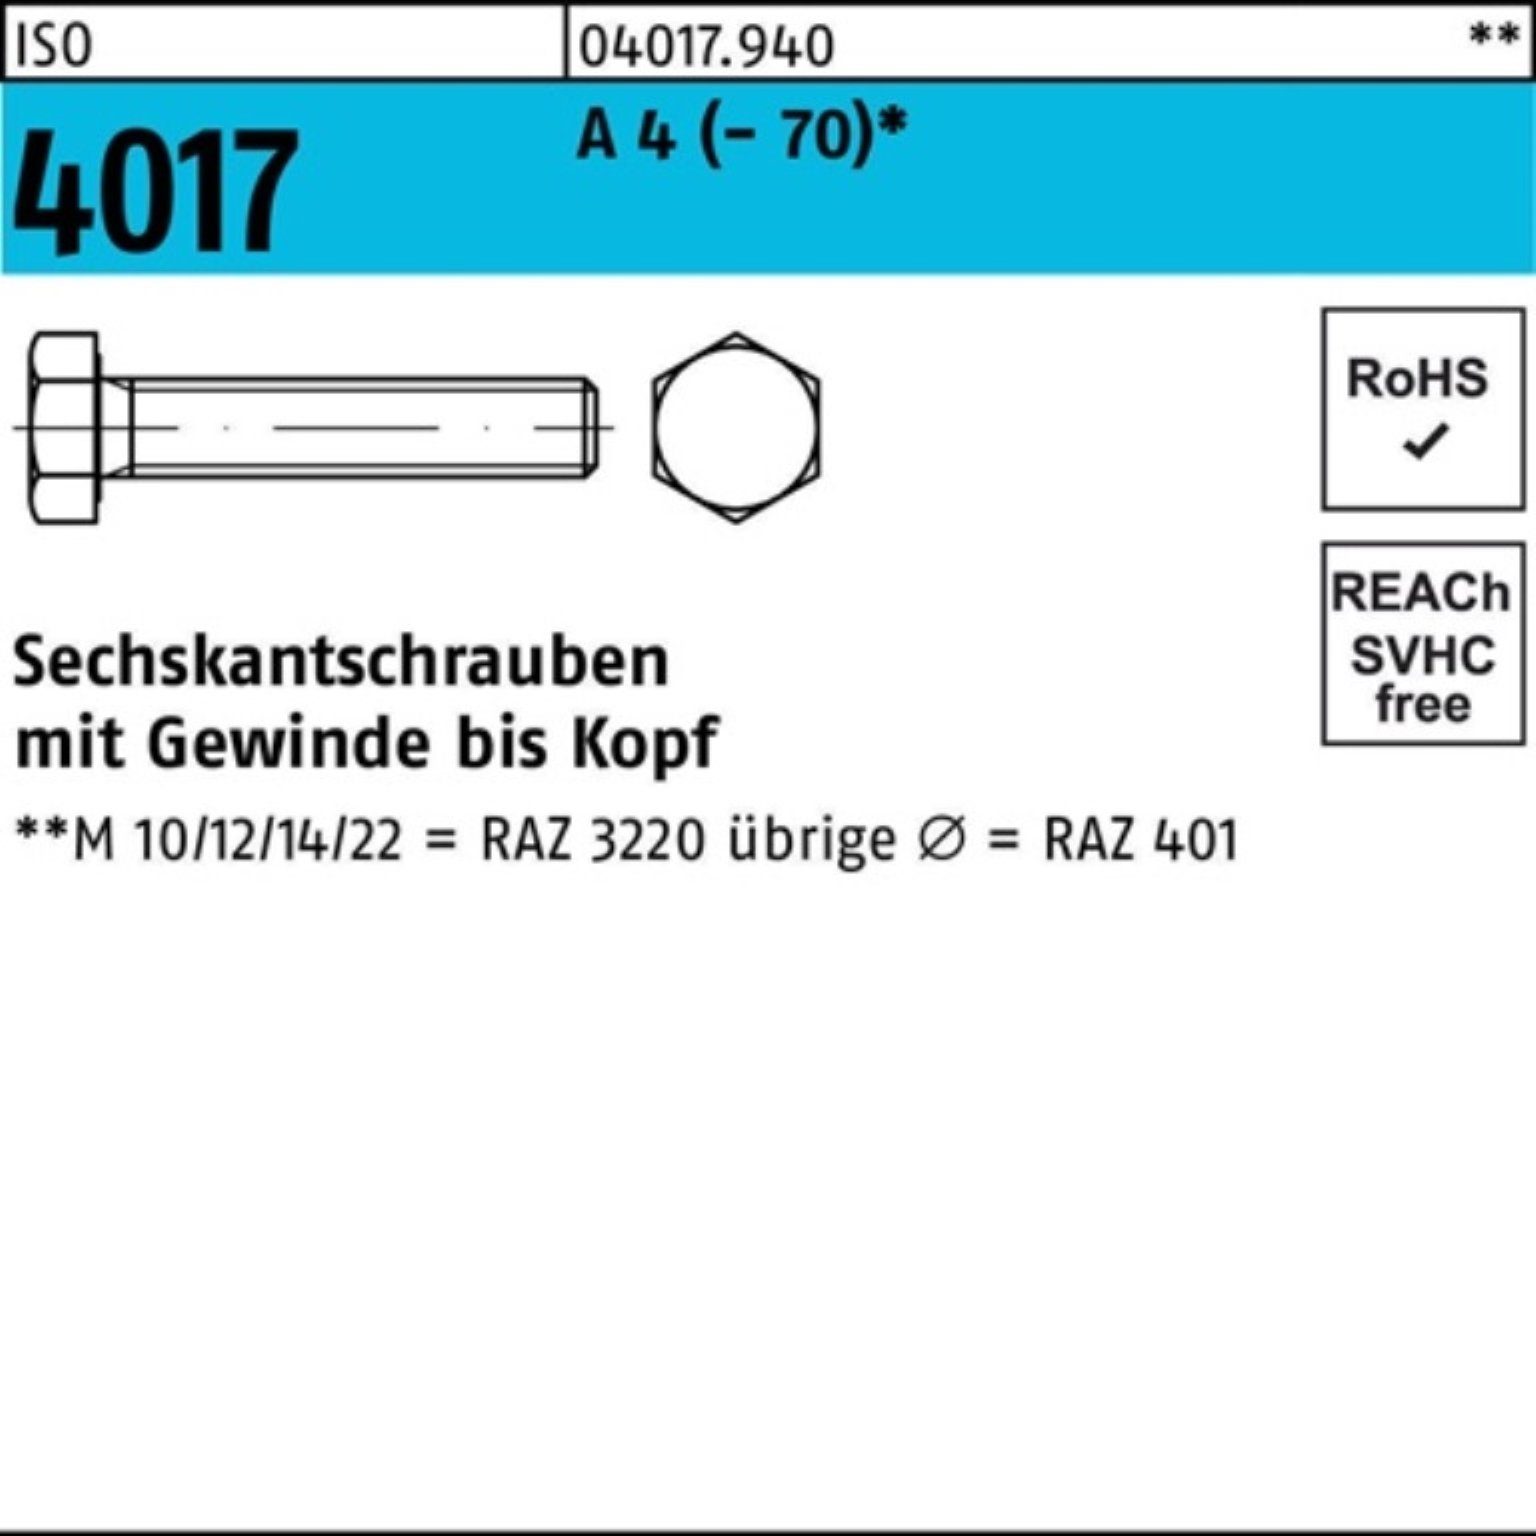 Bufab Sechskantschraube 100er Pack Sechskantschraube ISO 4017 VG M20x 100 A 4 (70) 1 Stück